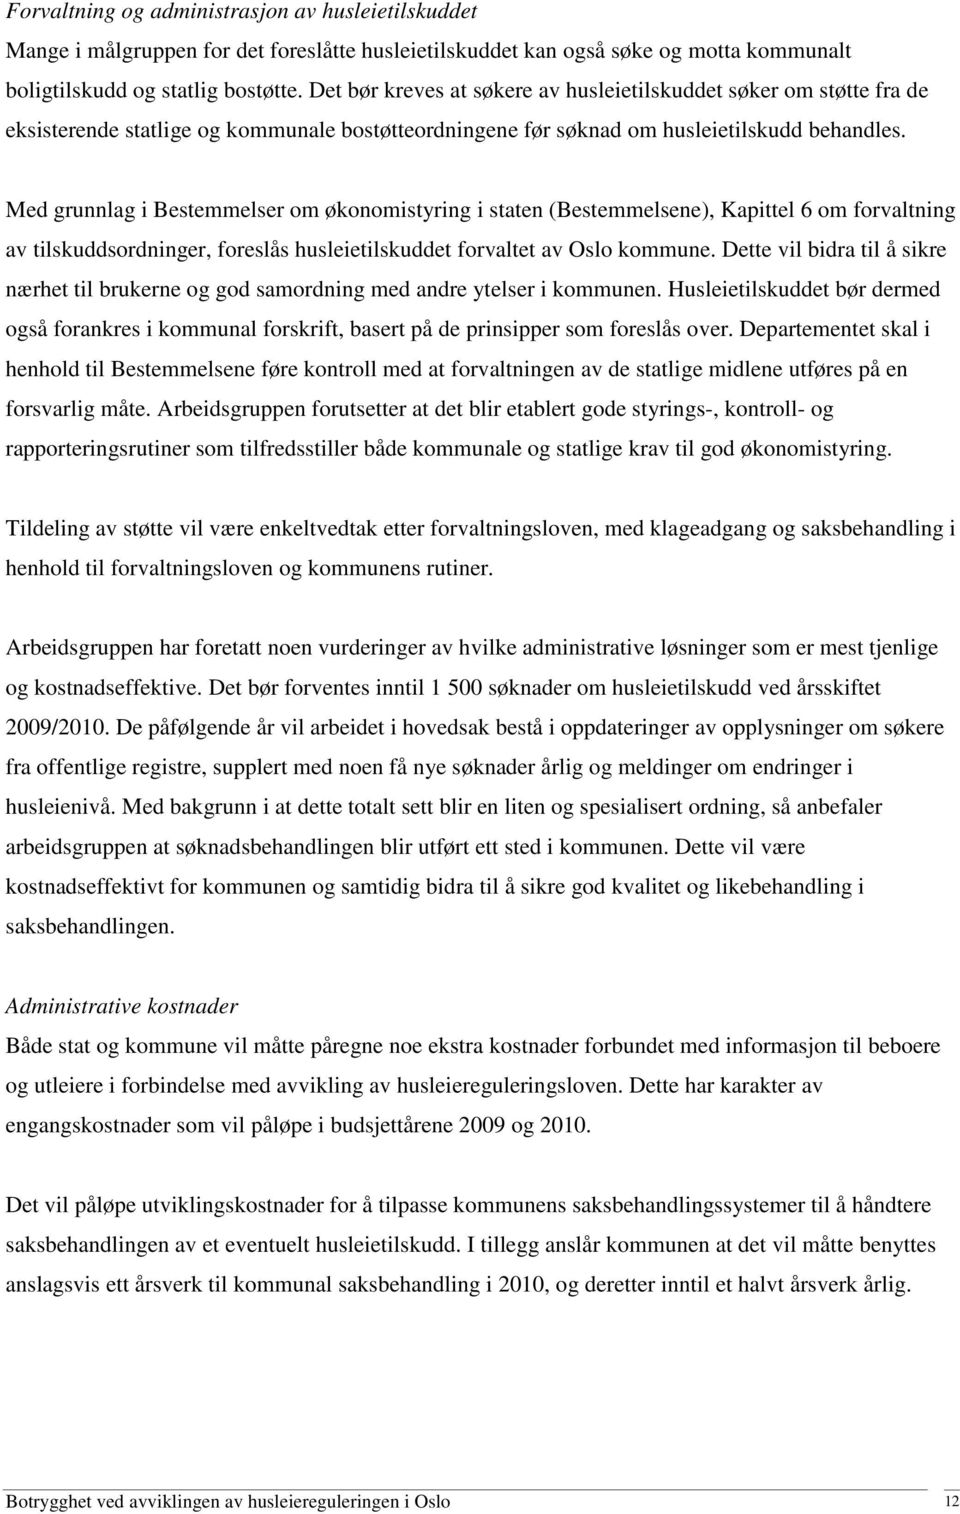 Med grunnlag i Bestemmelser om økonomistyring i staten (Bestemmelsene), Kapittel 6 om forvaltning av tilskuddsordninger, foreslås husleietilskuddet forvaltet av Oslo kommune.